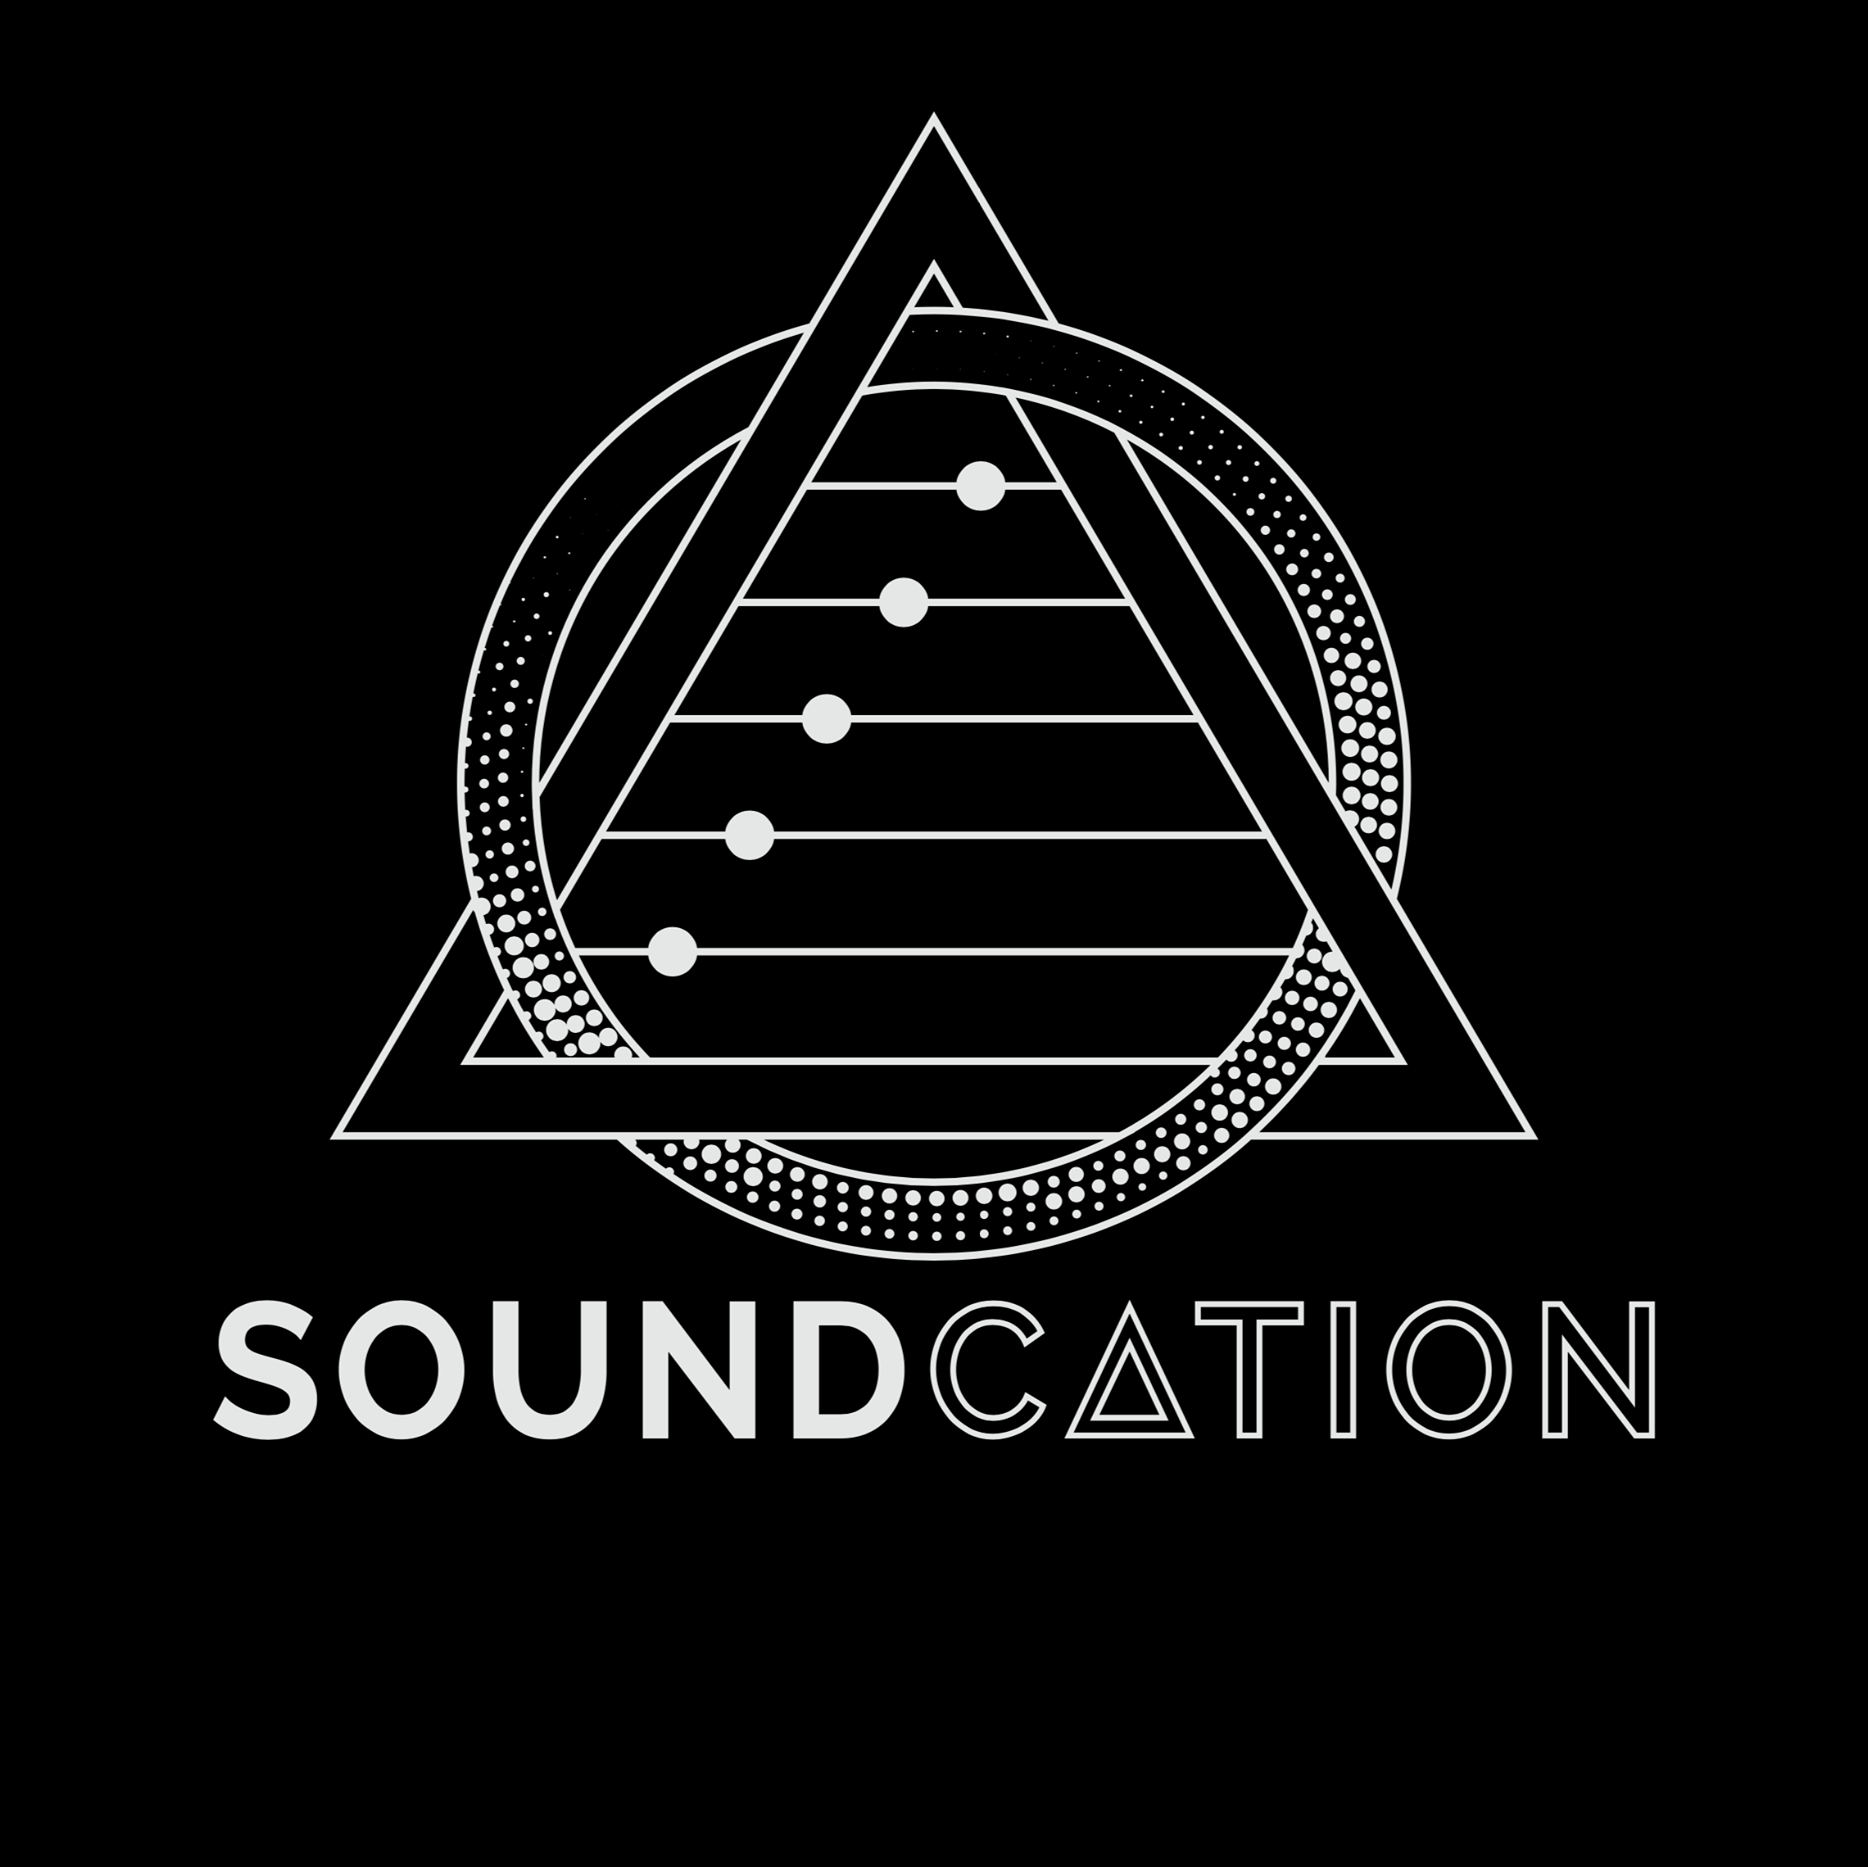 Soundcation